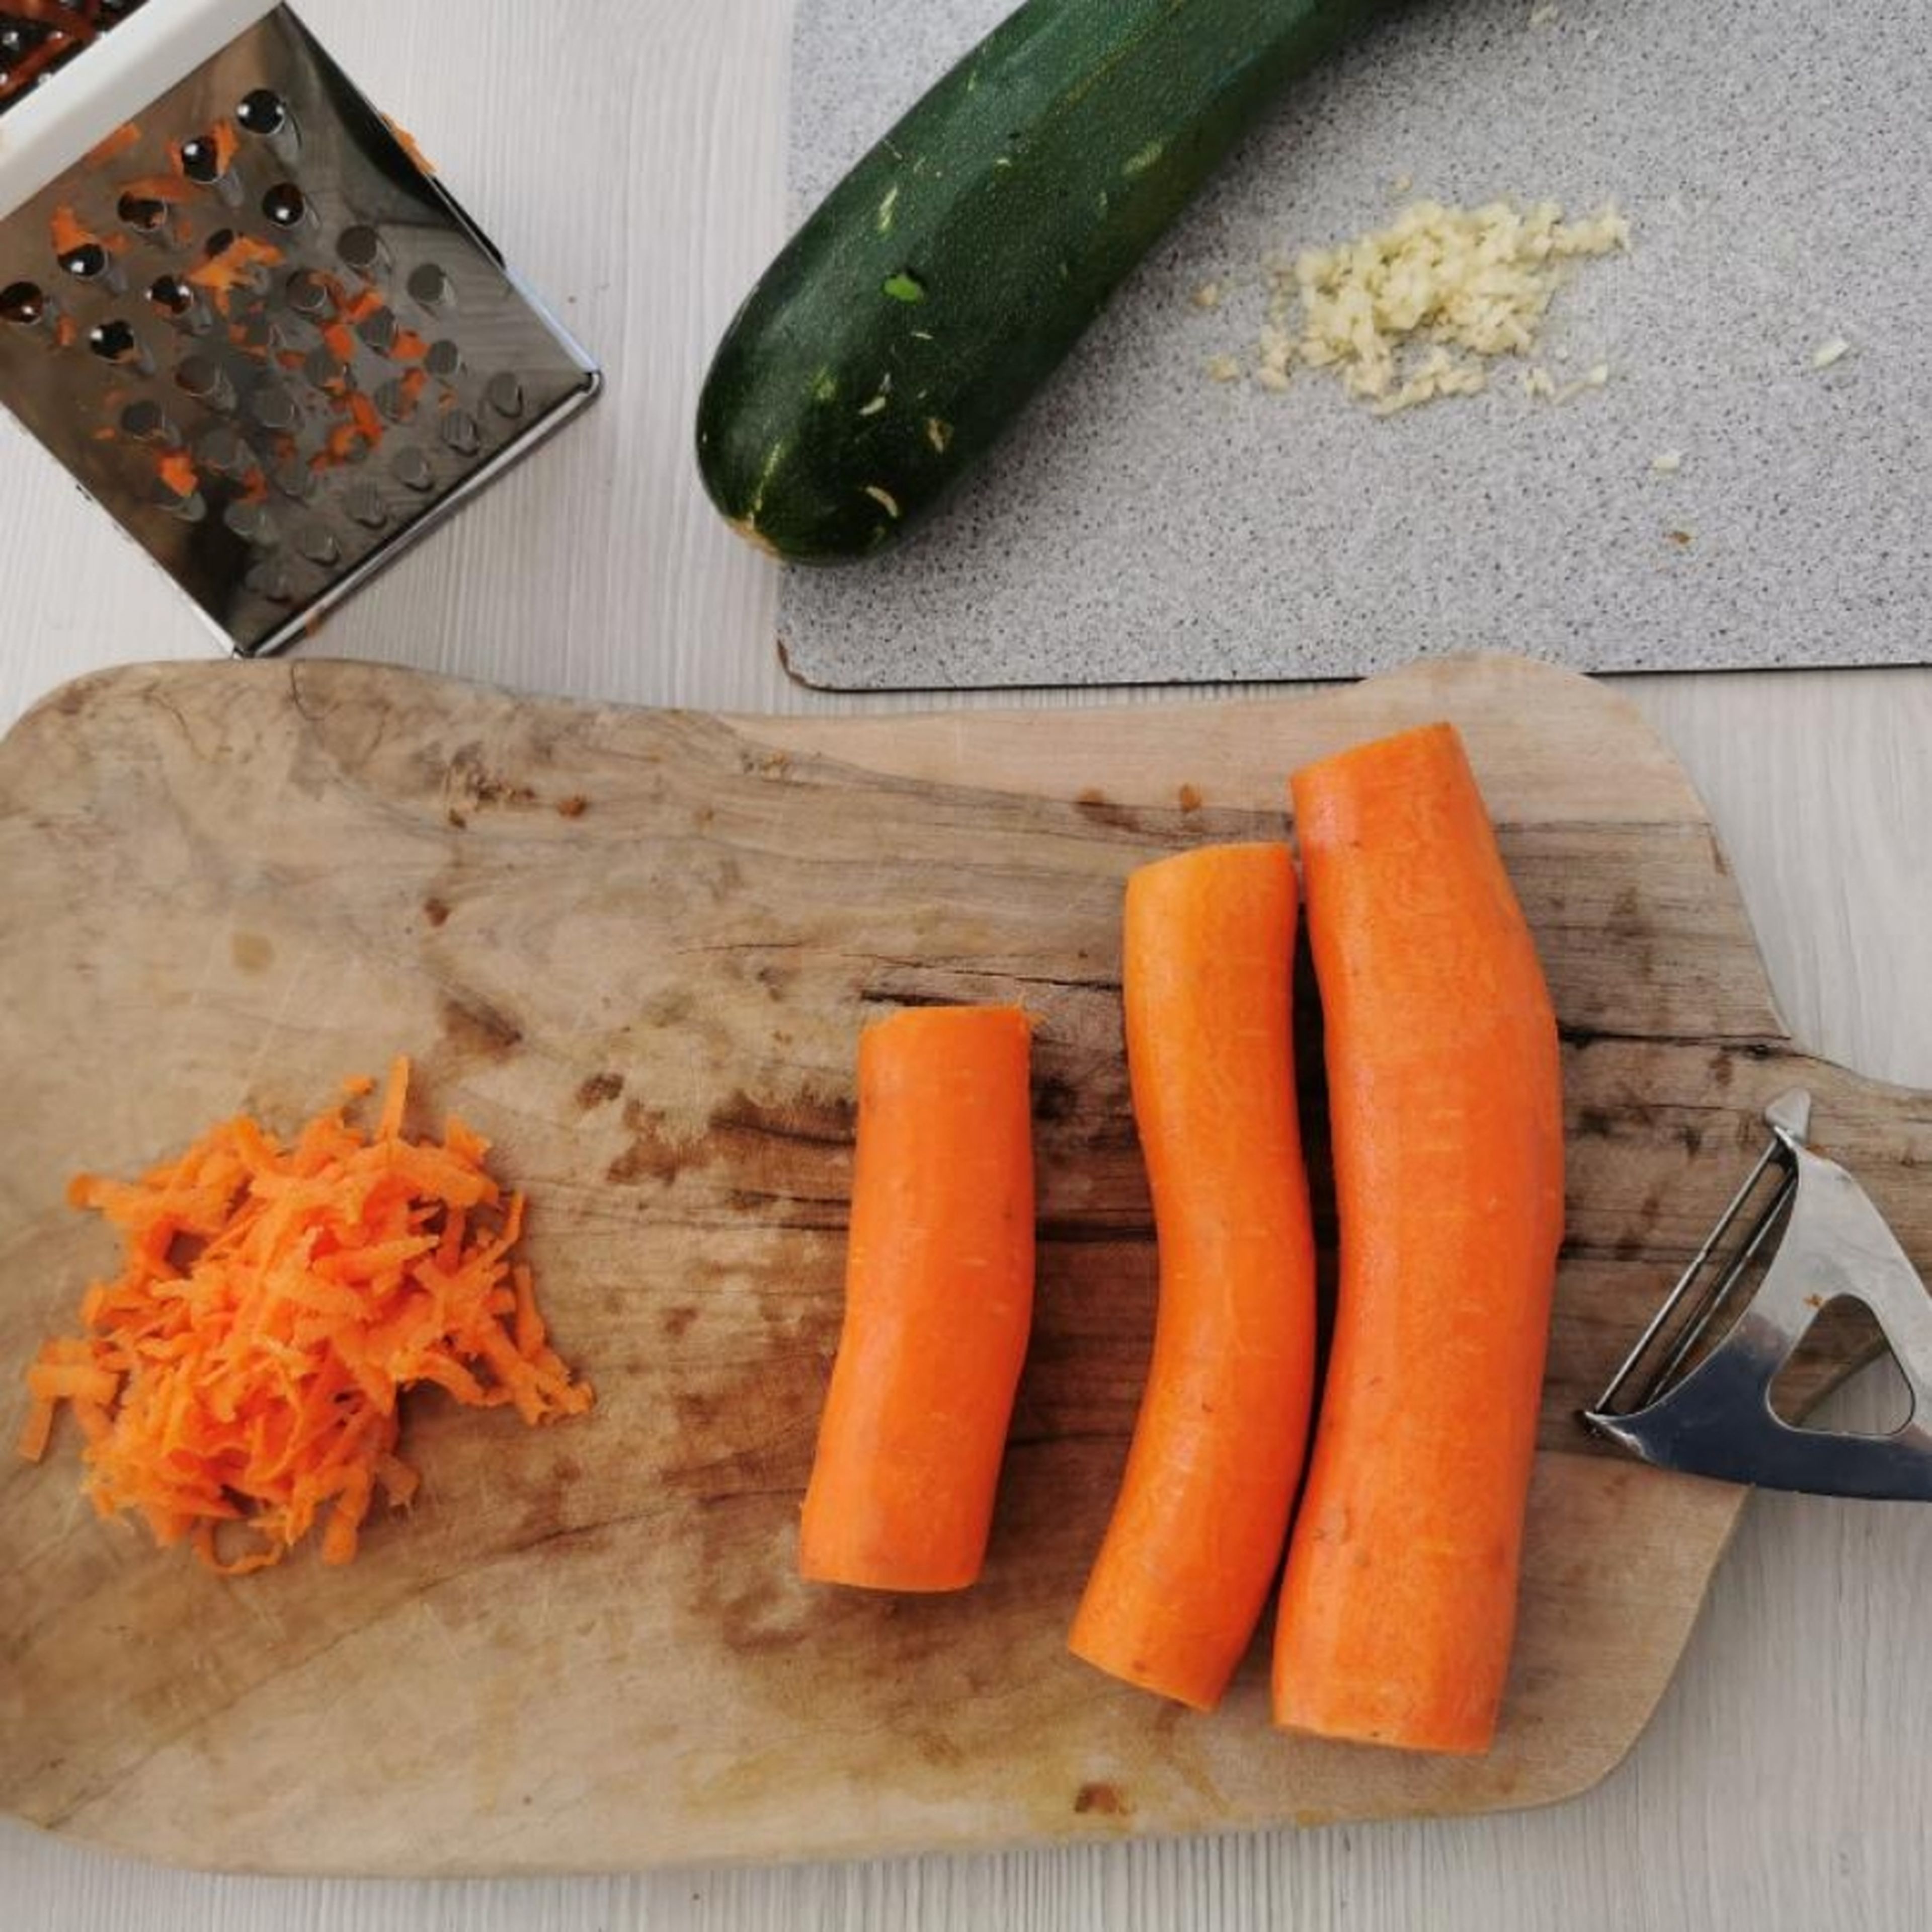 Zunächst Knoblauch abziehen und fein hacken. Karotten schälen und raspeln. Zucchini in kleine Würfel schneiden. Koriander fein hacken